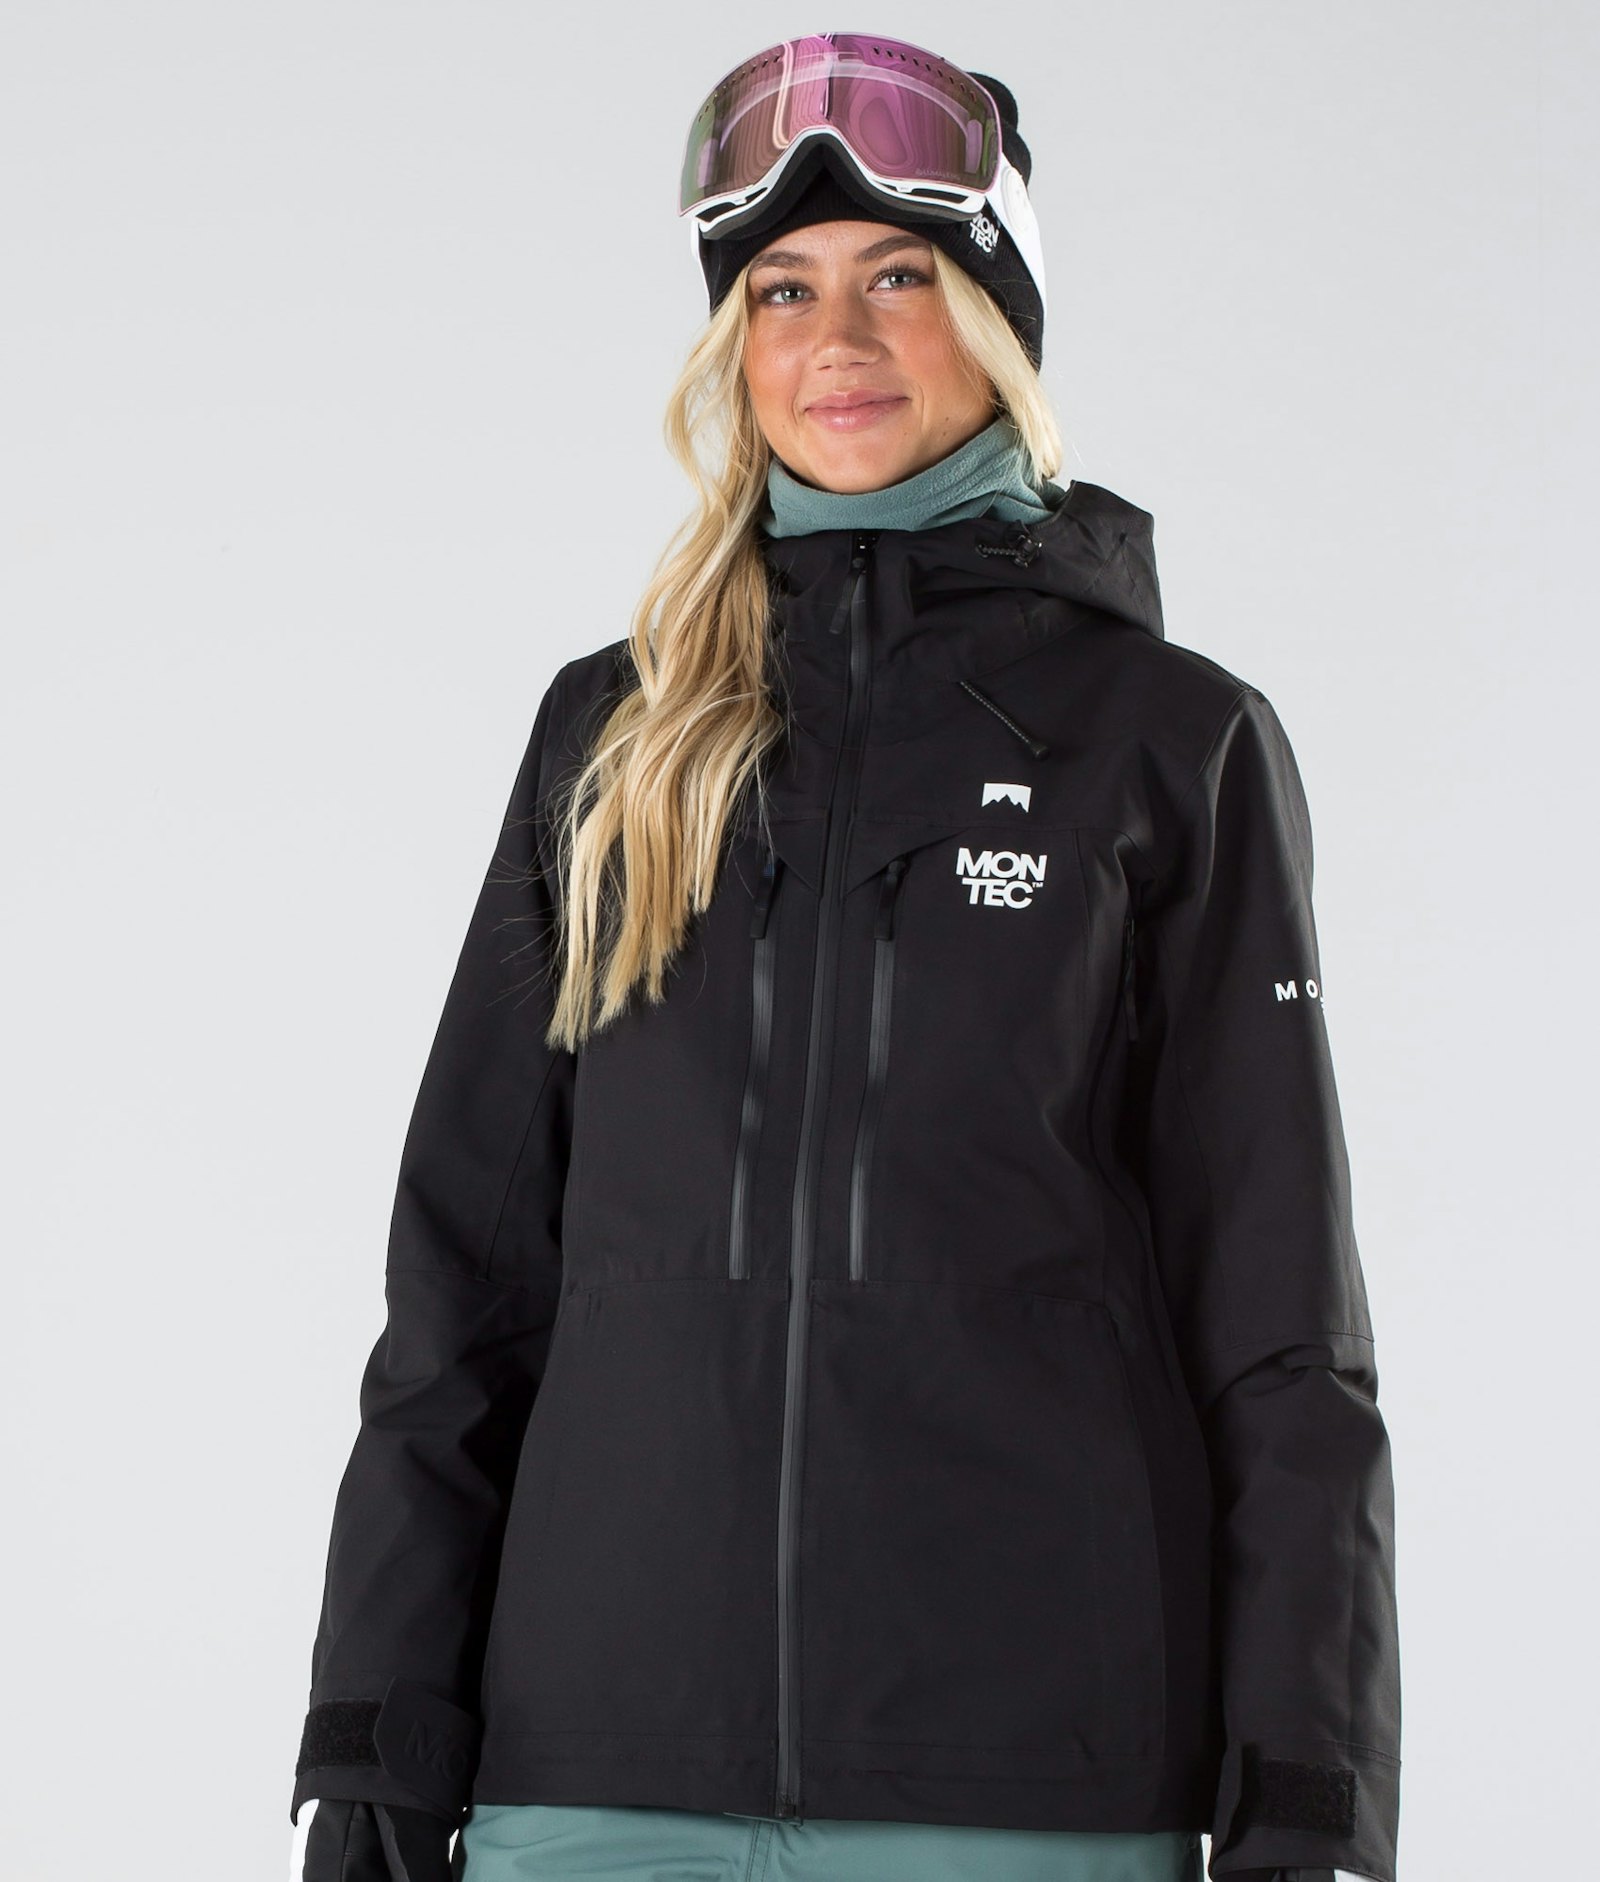 Moss W 2019 Veste Snowboard Femme Black